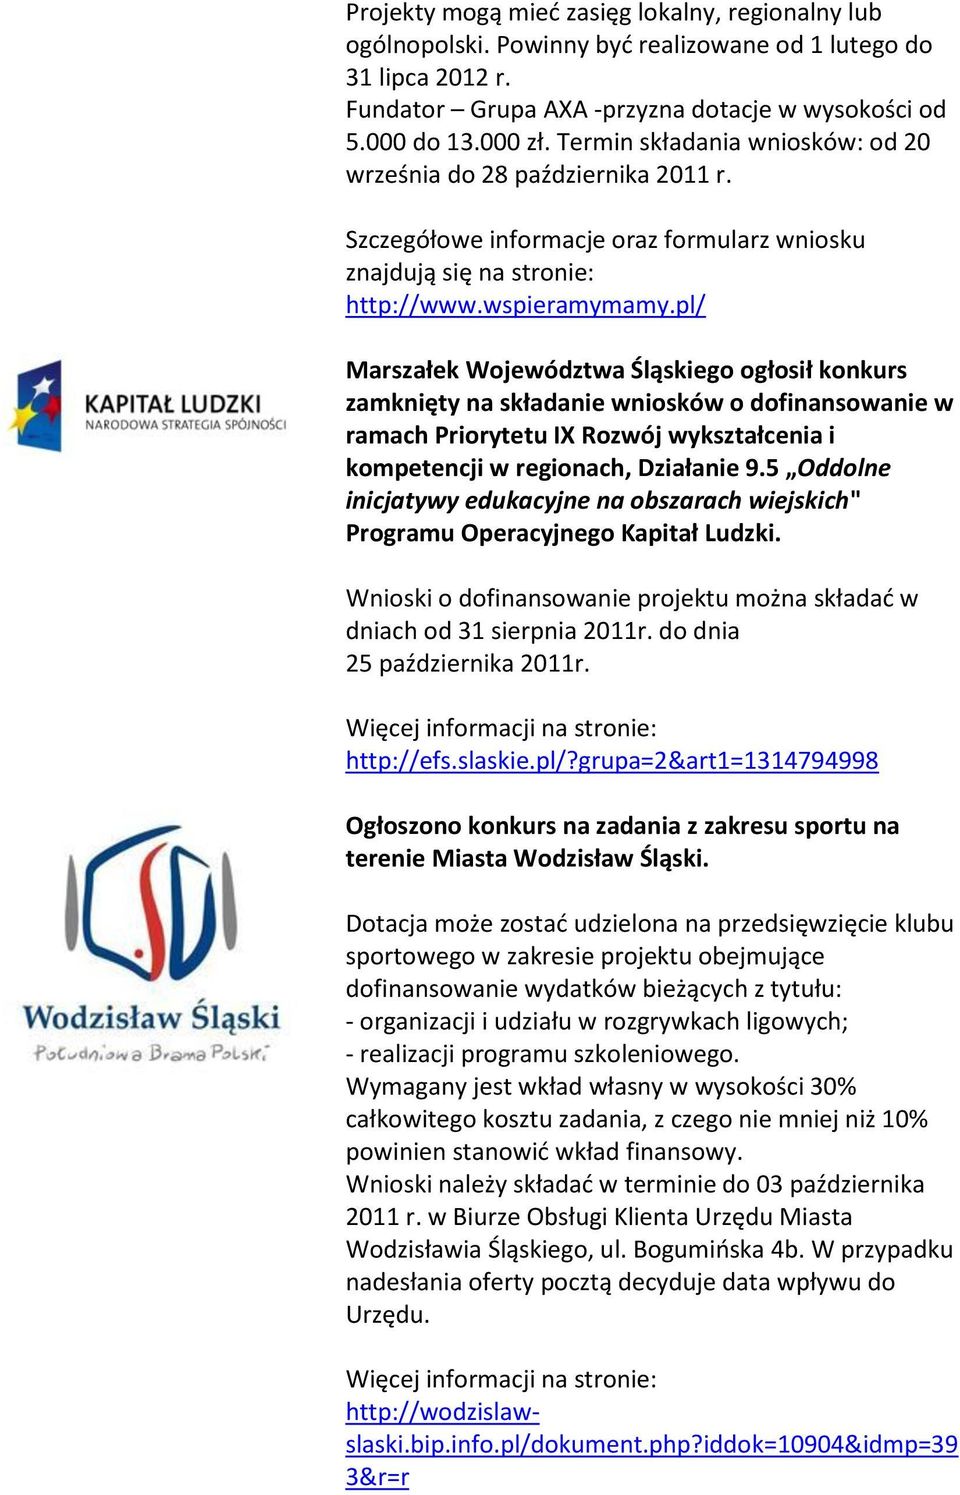 pl/ Marszałek Województwa Śląskiego ogłosił konkurs zamknięty na składanie wniosków o dofinansowanie w ramach Priorytetu IX Rozwój wykształcenia i kompetencji w regionach, Działanie 9.